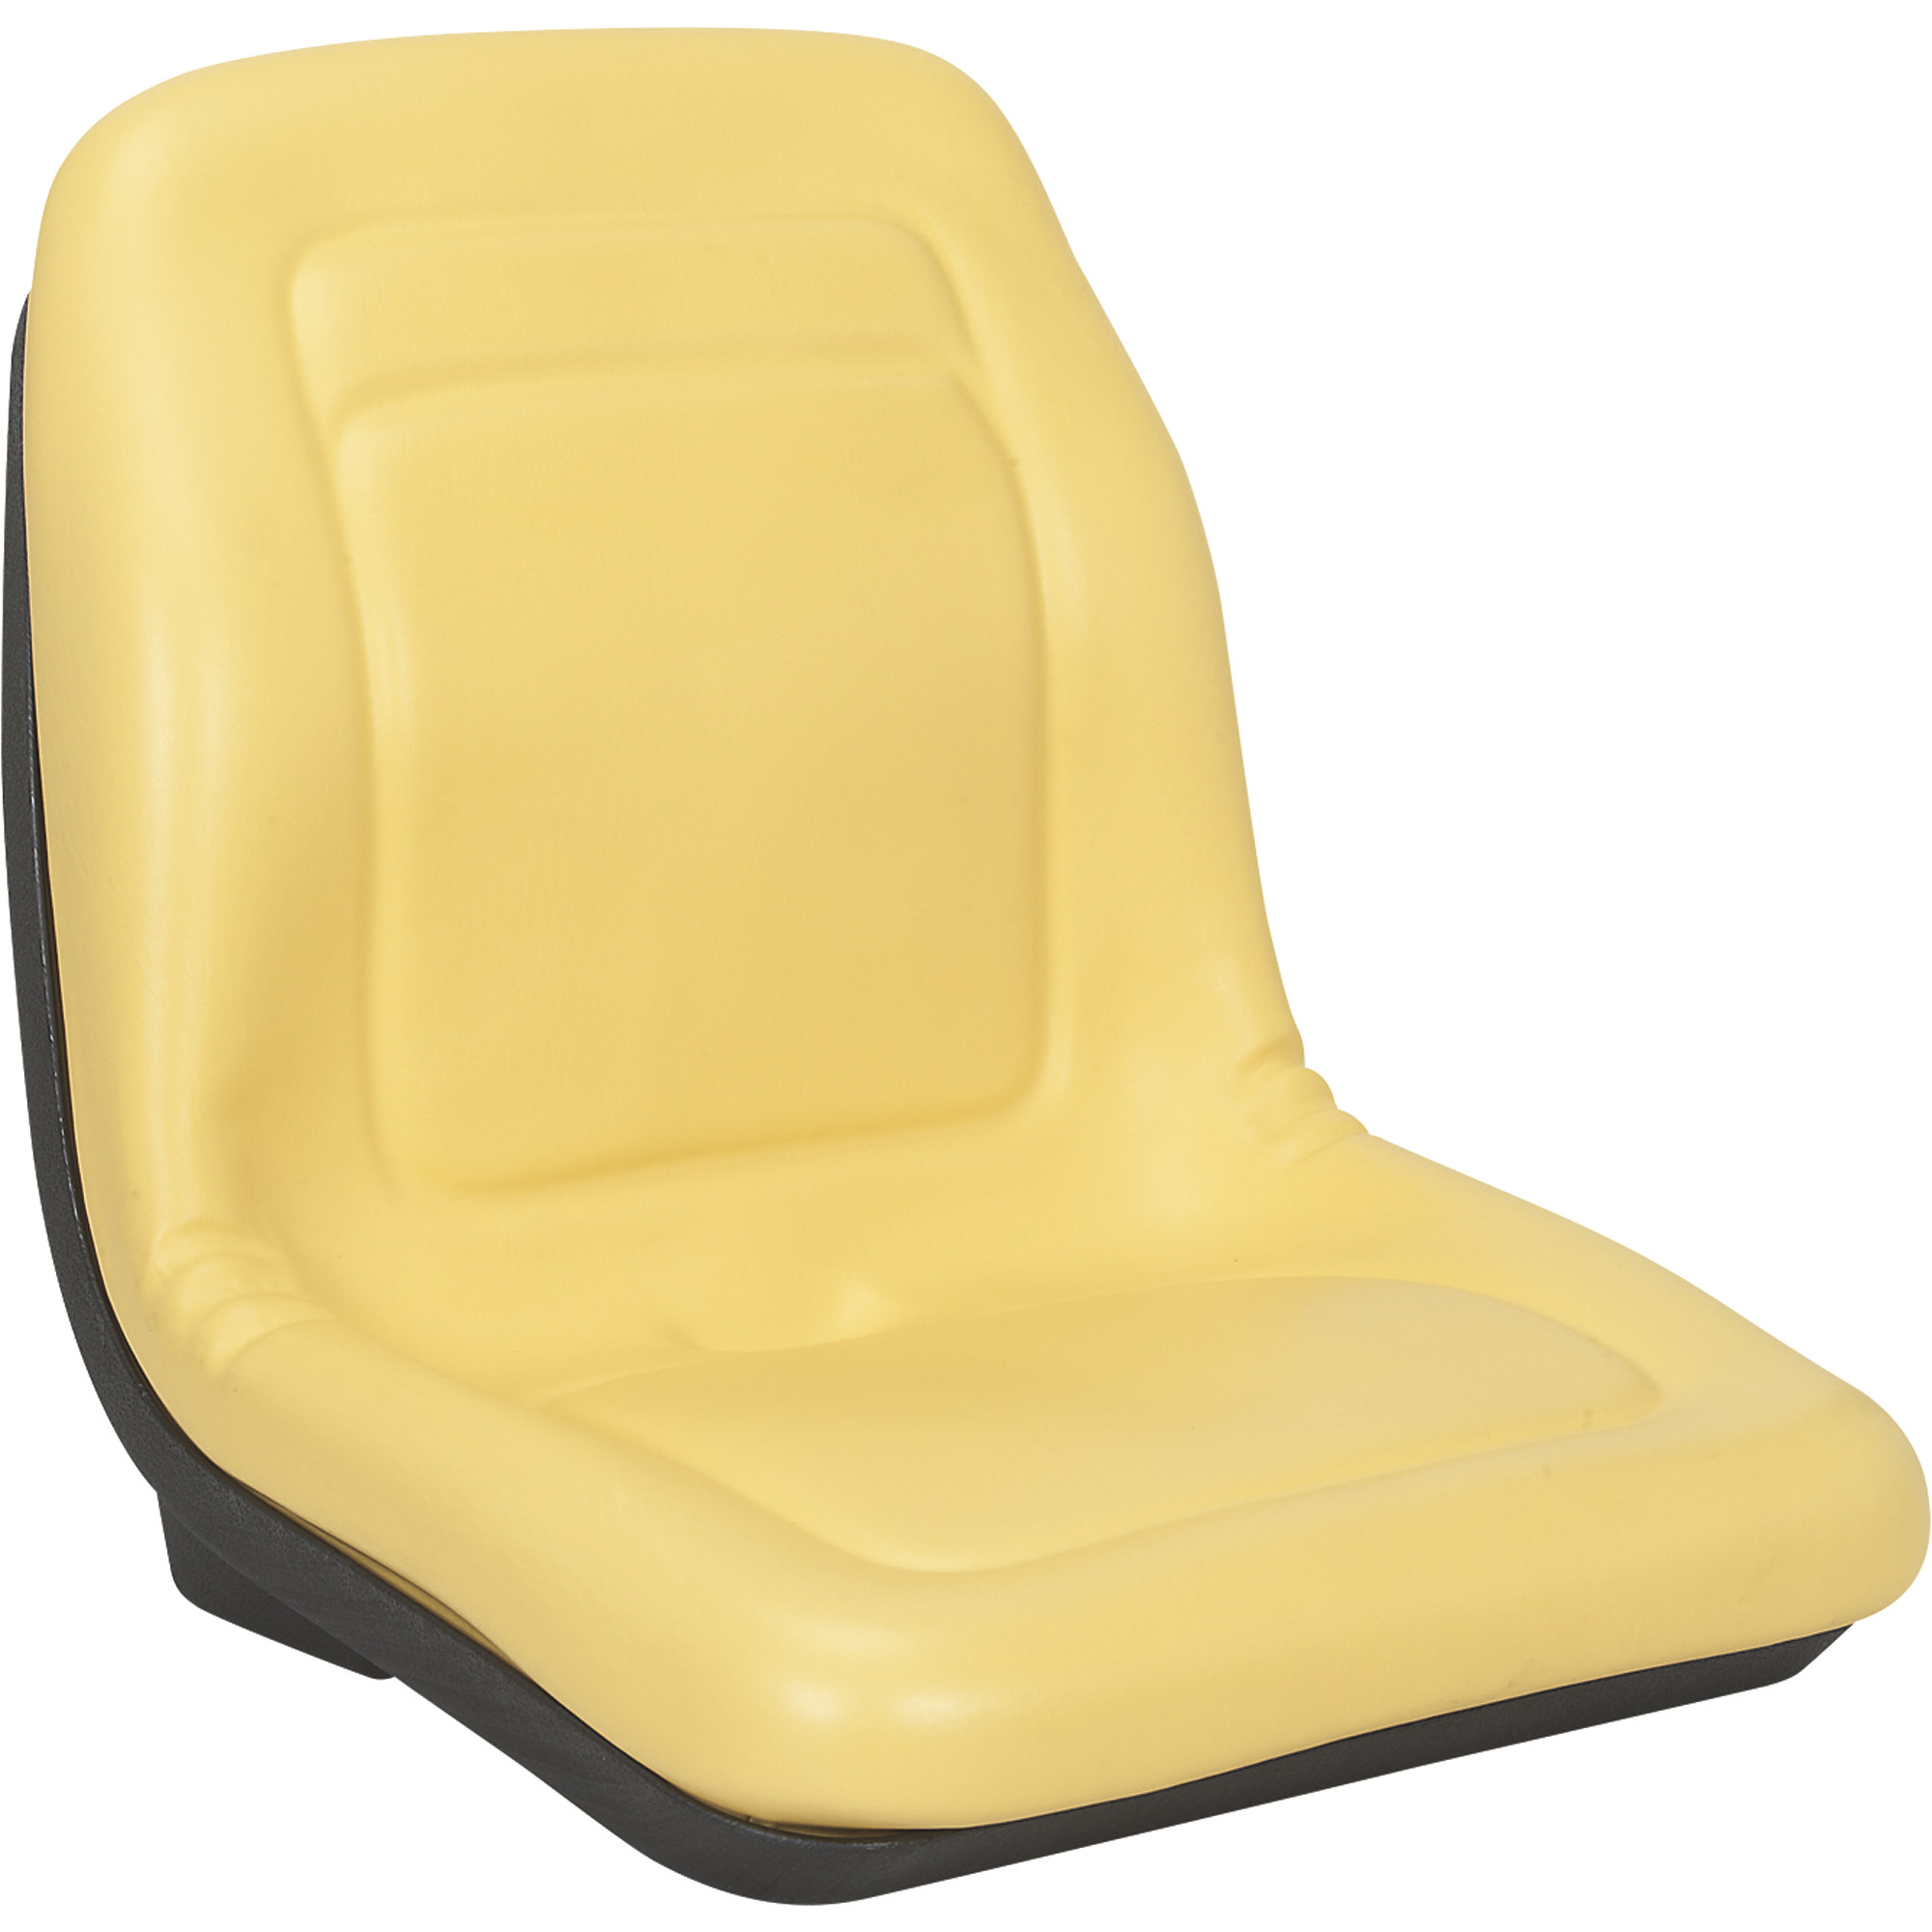 A & I Gator Lawn Mower Seat â Yellow, Model VG11696